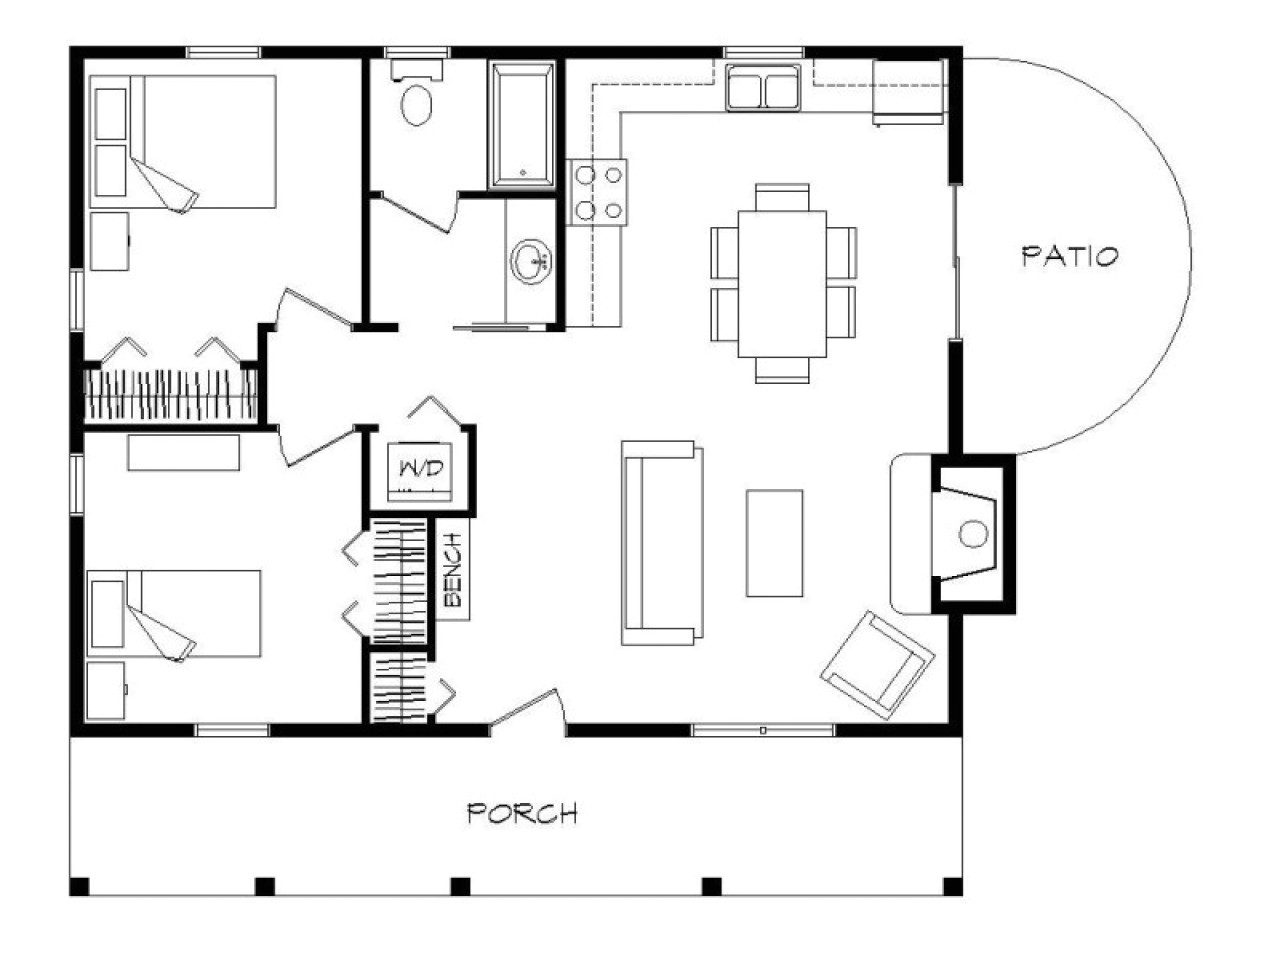 6cf363f79226ada7 2 bedroom log cabin floor plans 2 bedroom manufactured cabin